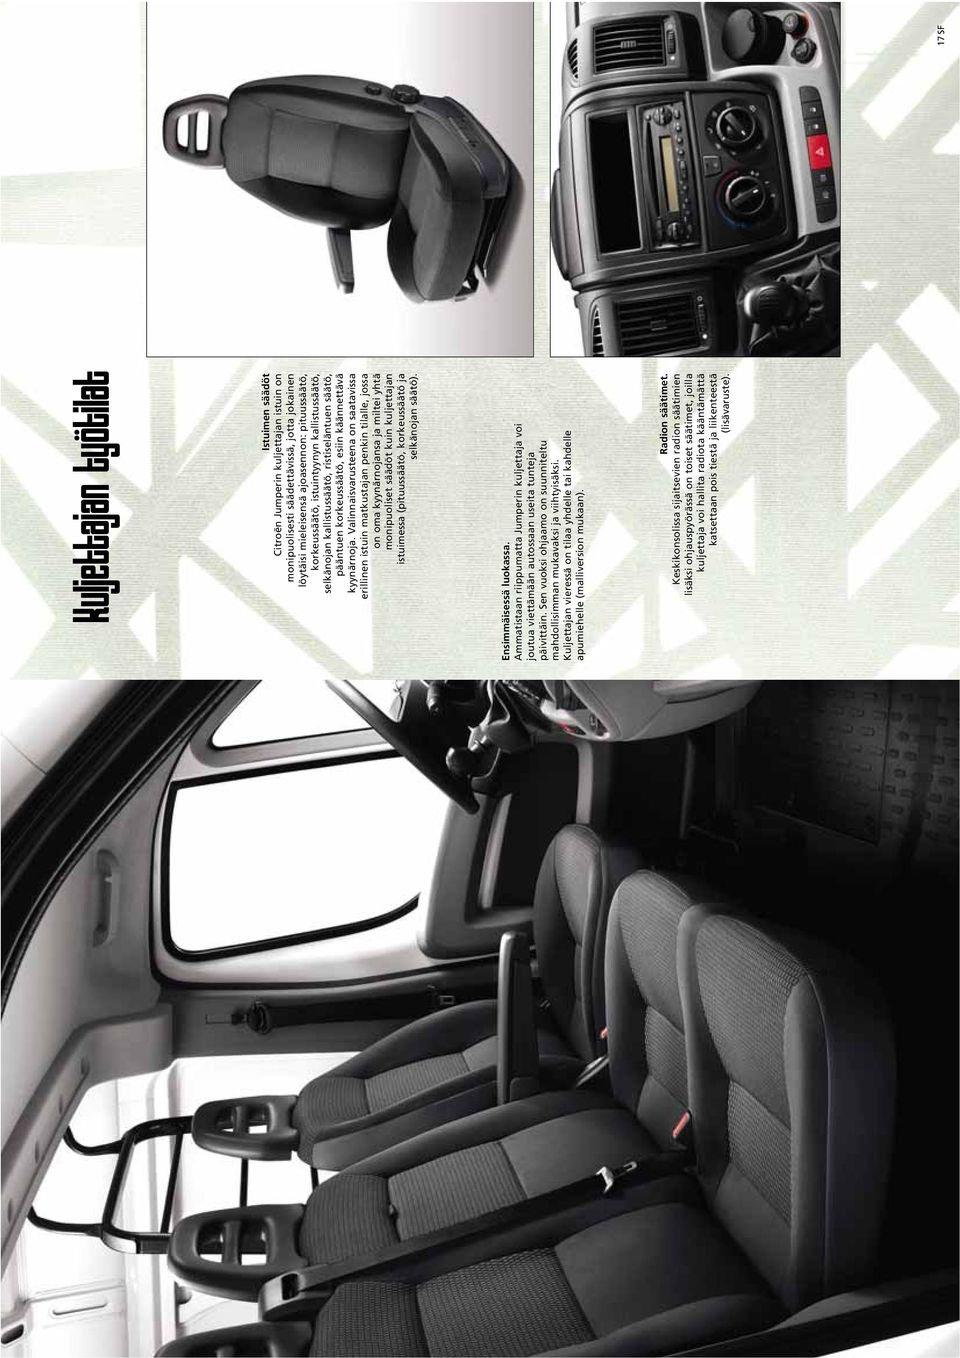 Valinnaisvarusteena on saatavissa erillinen istuin matkustajan penkin tilalle, jossa on oma kyynärnojansa ja miltei yhtä monipuoliset säädöt kuin kuljettajan istuimessa (pituussäätö, korkeussäätö ja